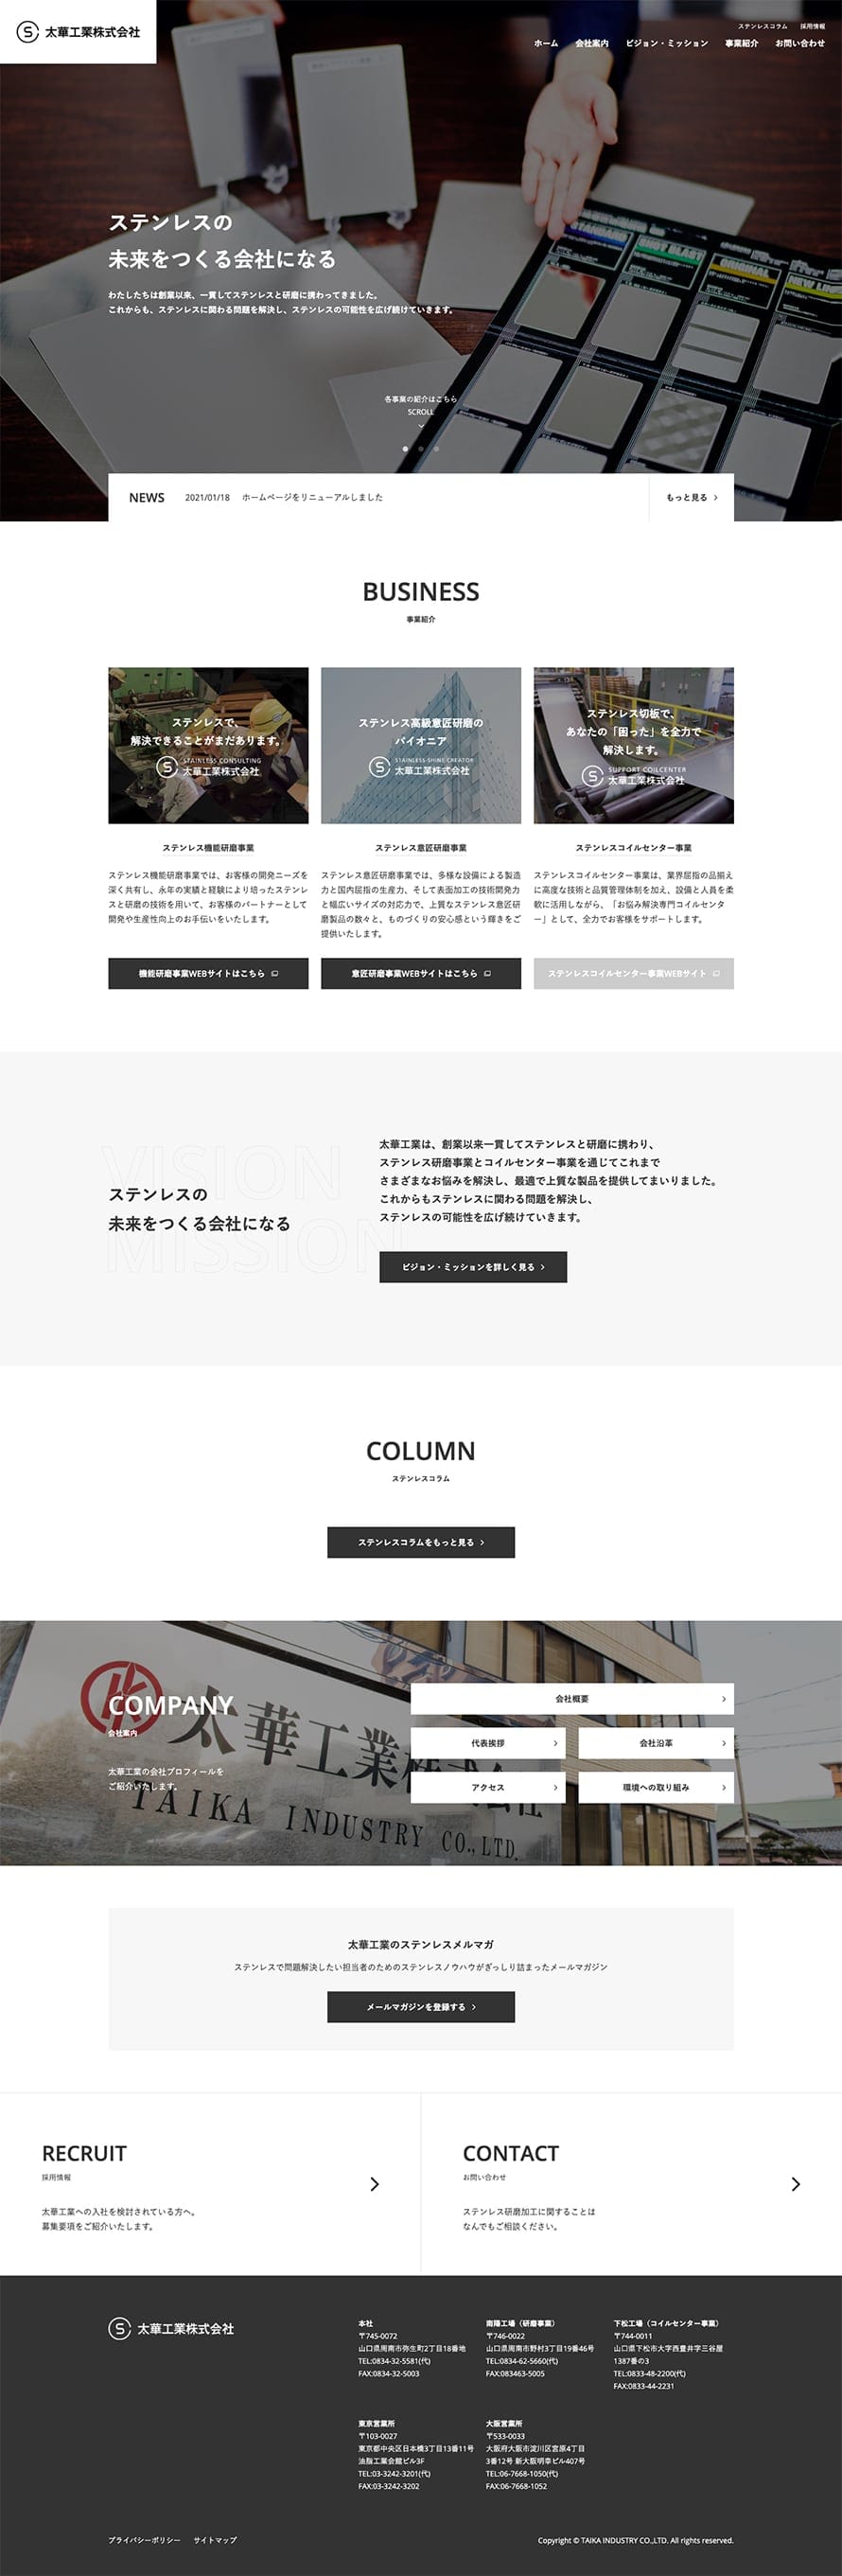 太華工業株式会社 コーポレートサイト